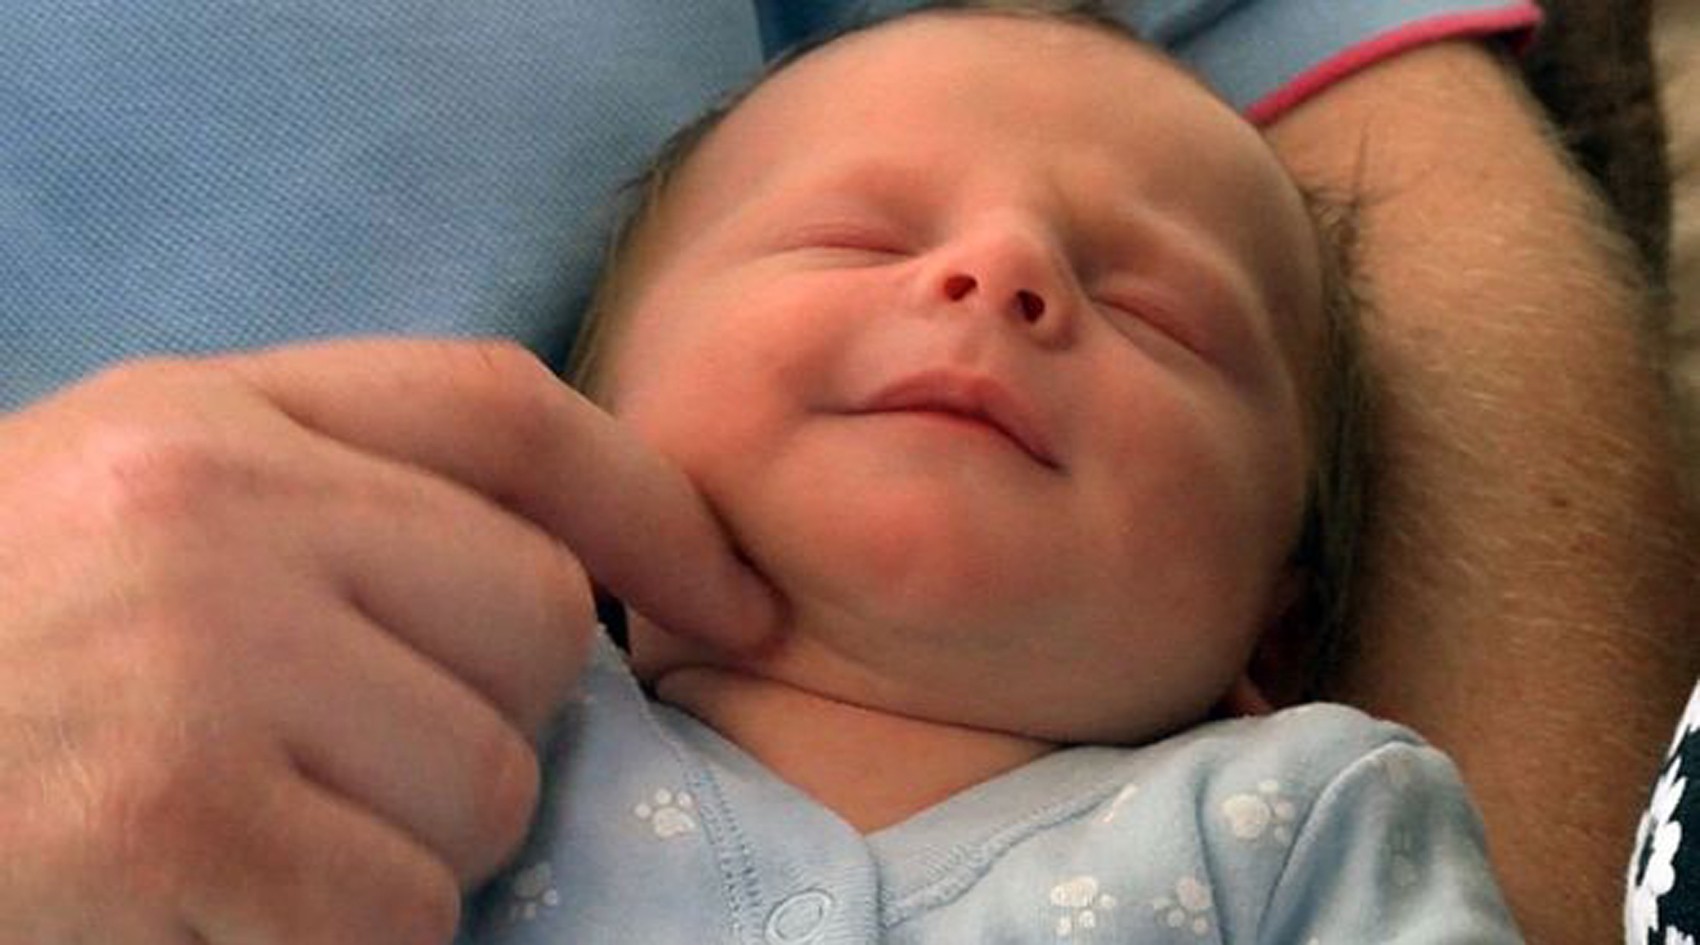  Teddie passou cinco meses "escondido" no útero da mãe  (Foto: BBC)